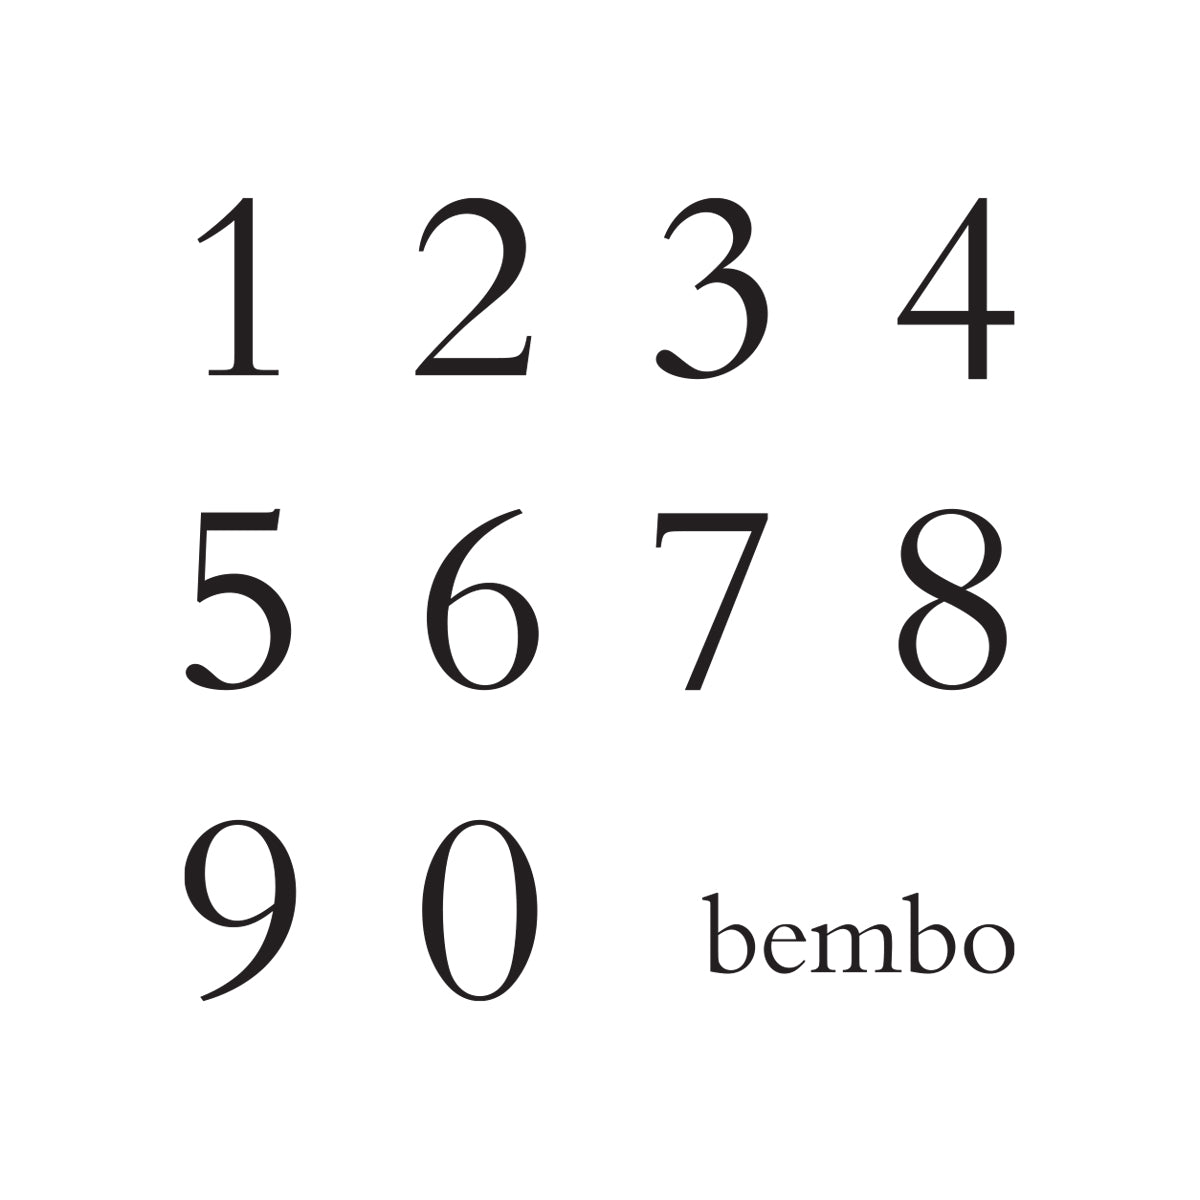 Leaf-Bembo Number.